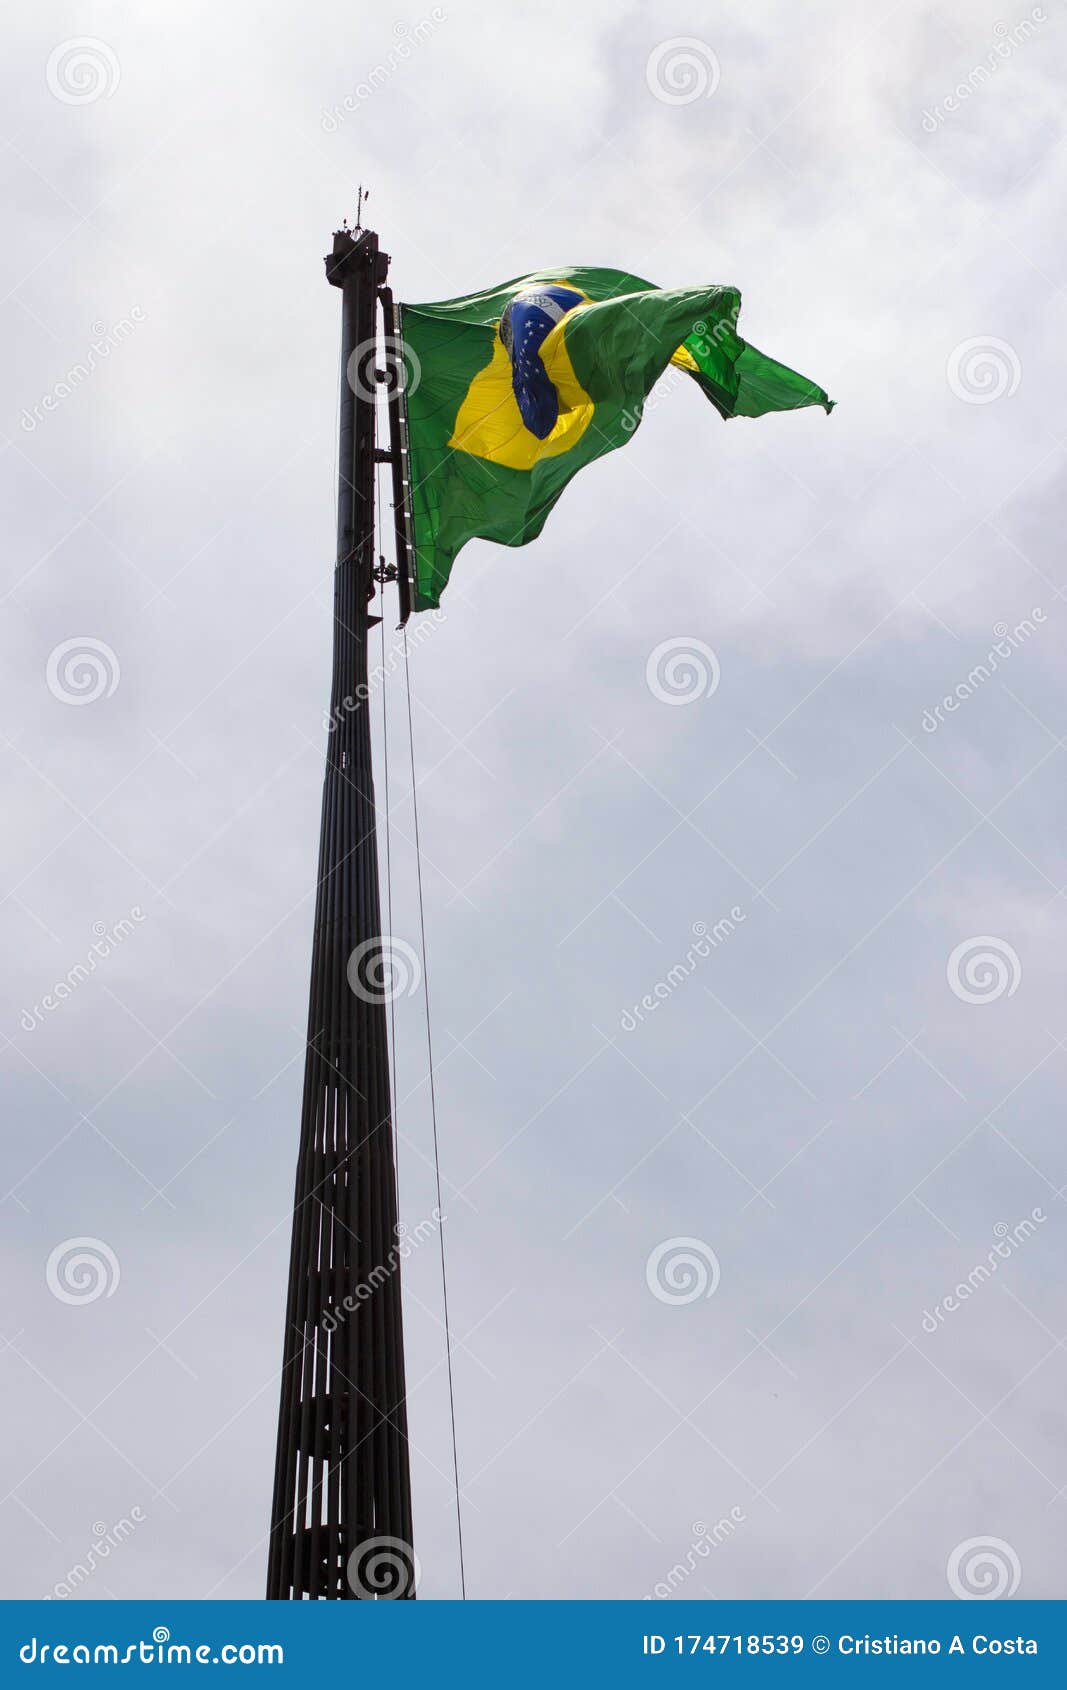 flag of brazil raised